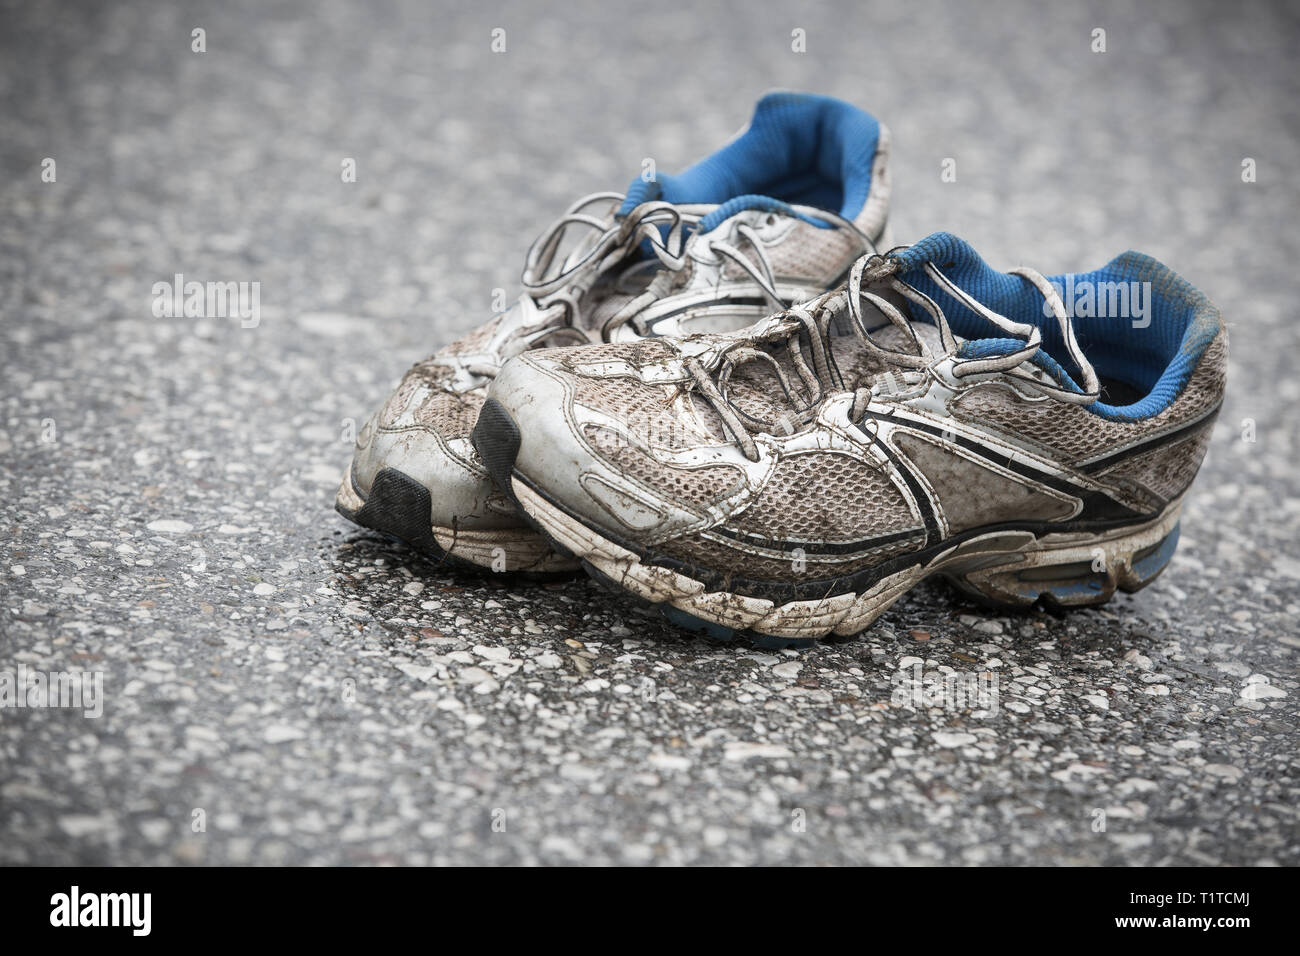 Abgenutzt, schmutzig, stinkend und alte Laufschuhe auf einer Asphaltstraße.  Straße, Ausdauer, Marathon und aktiven Lebensstil Konzept Stockfotografie -  Alamy